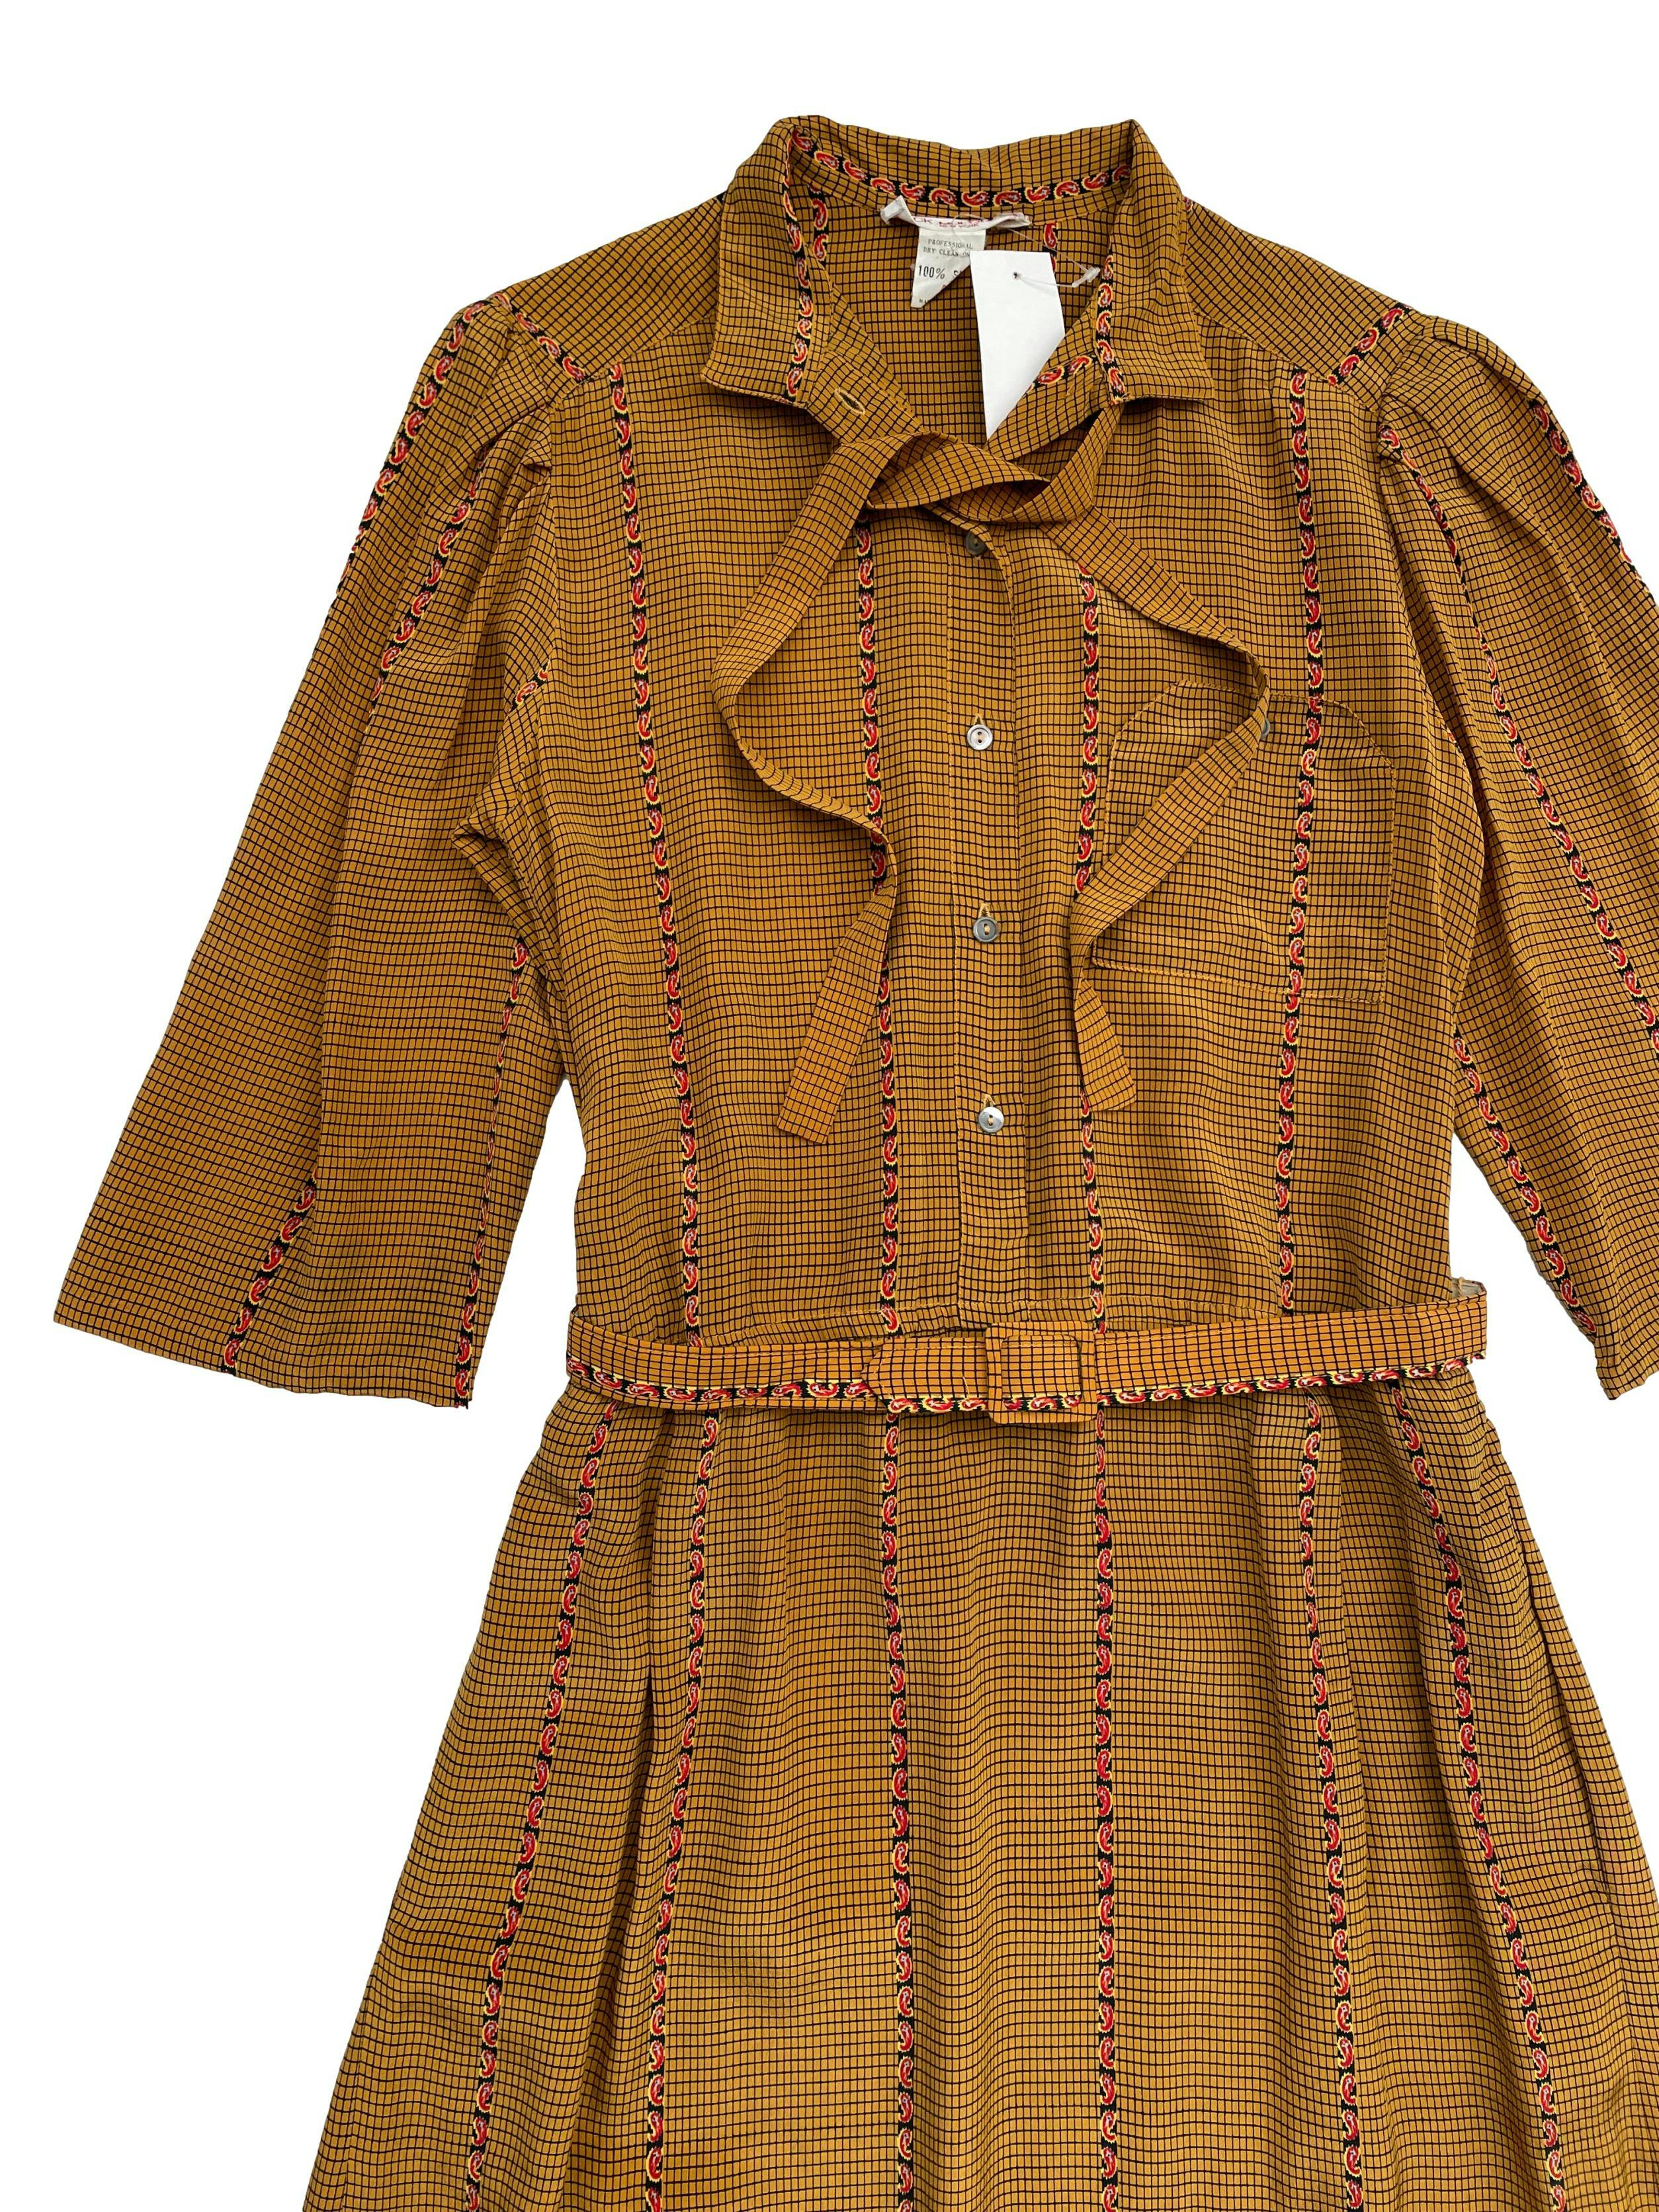 Vestido vintage 100% seda color mostaza con estampado paisley.Cuello nerú con lazo, hombros recogidos , bolsillo superior y cinturón. Largo 107cm.